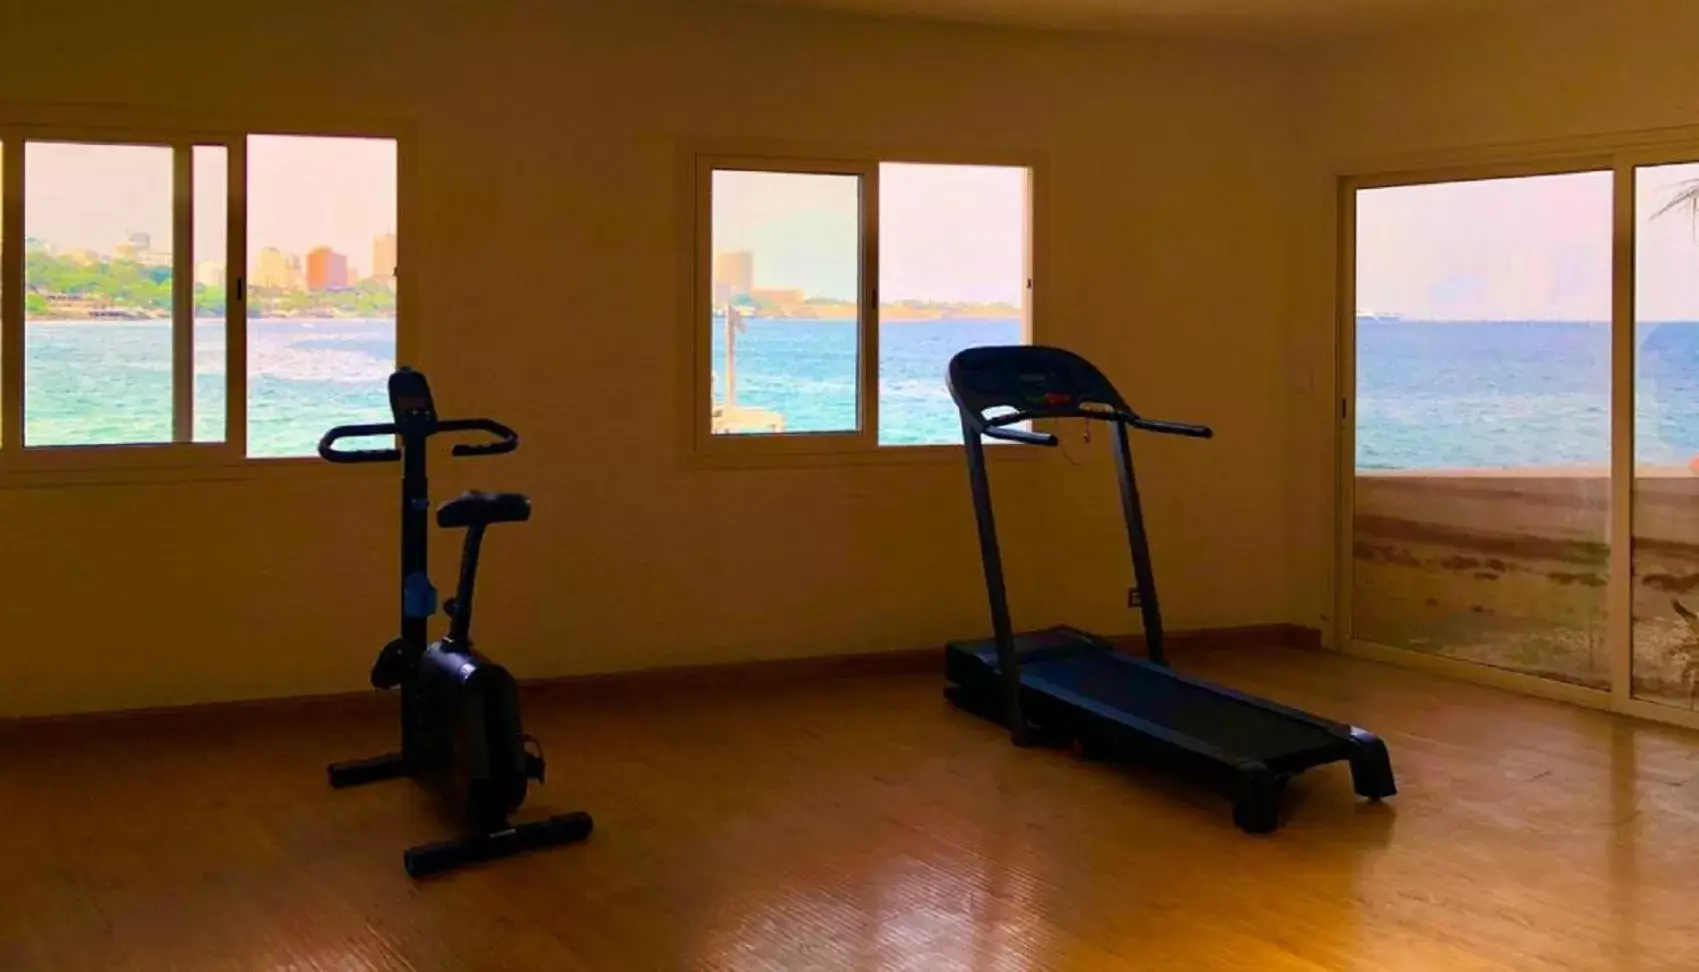 Fitness centre/facilities, Fitness Center/Facilities in Hotel Jardin Savana Dakar